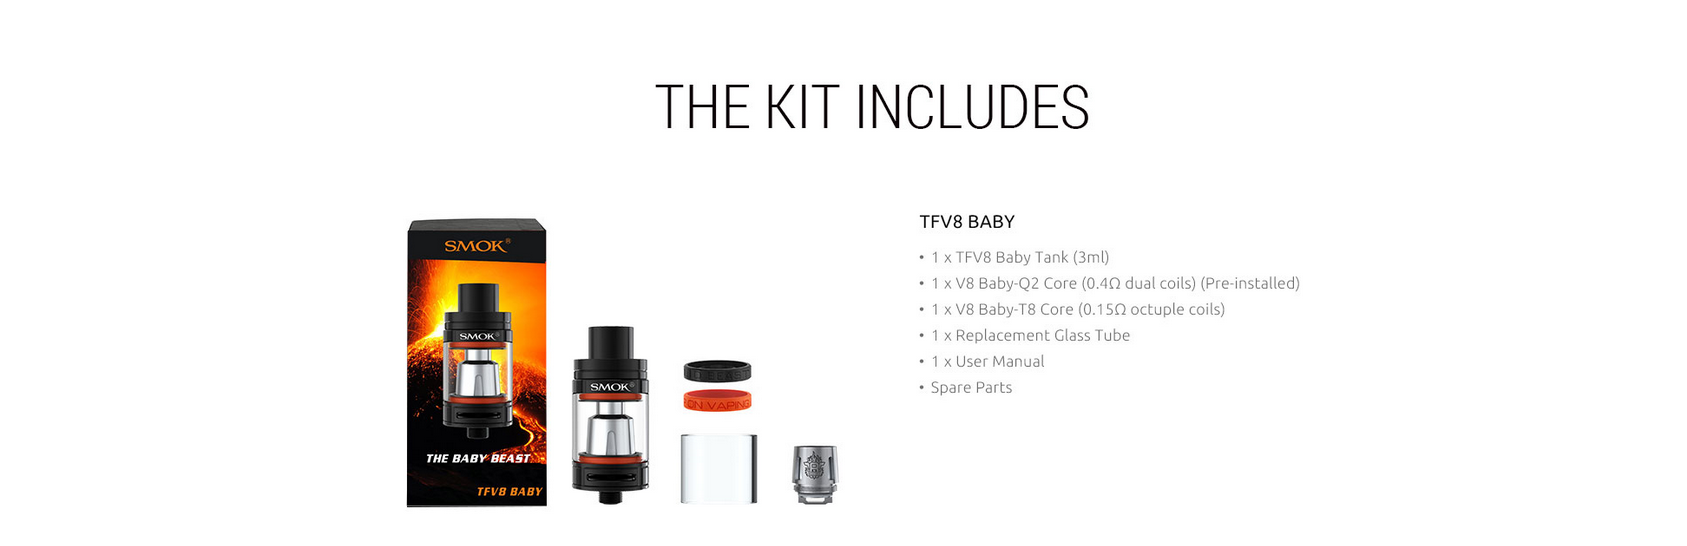 TFV8 Baby included in kit